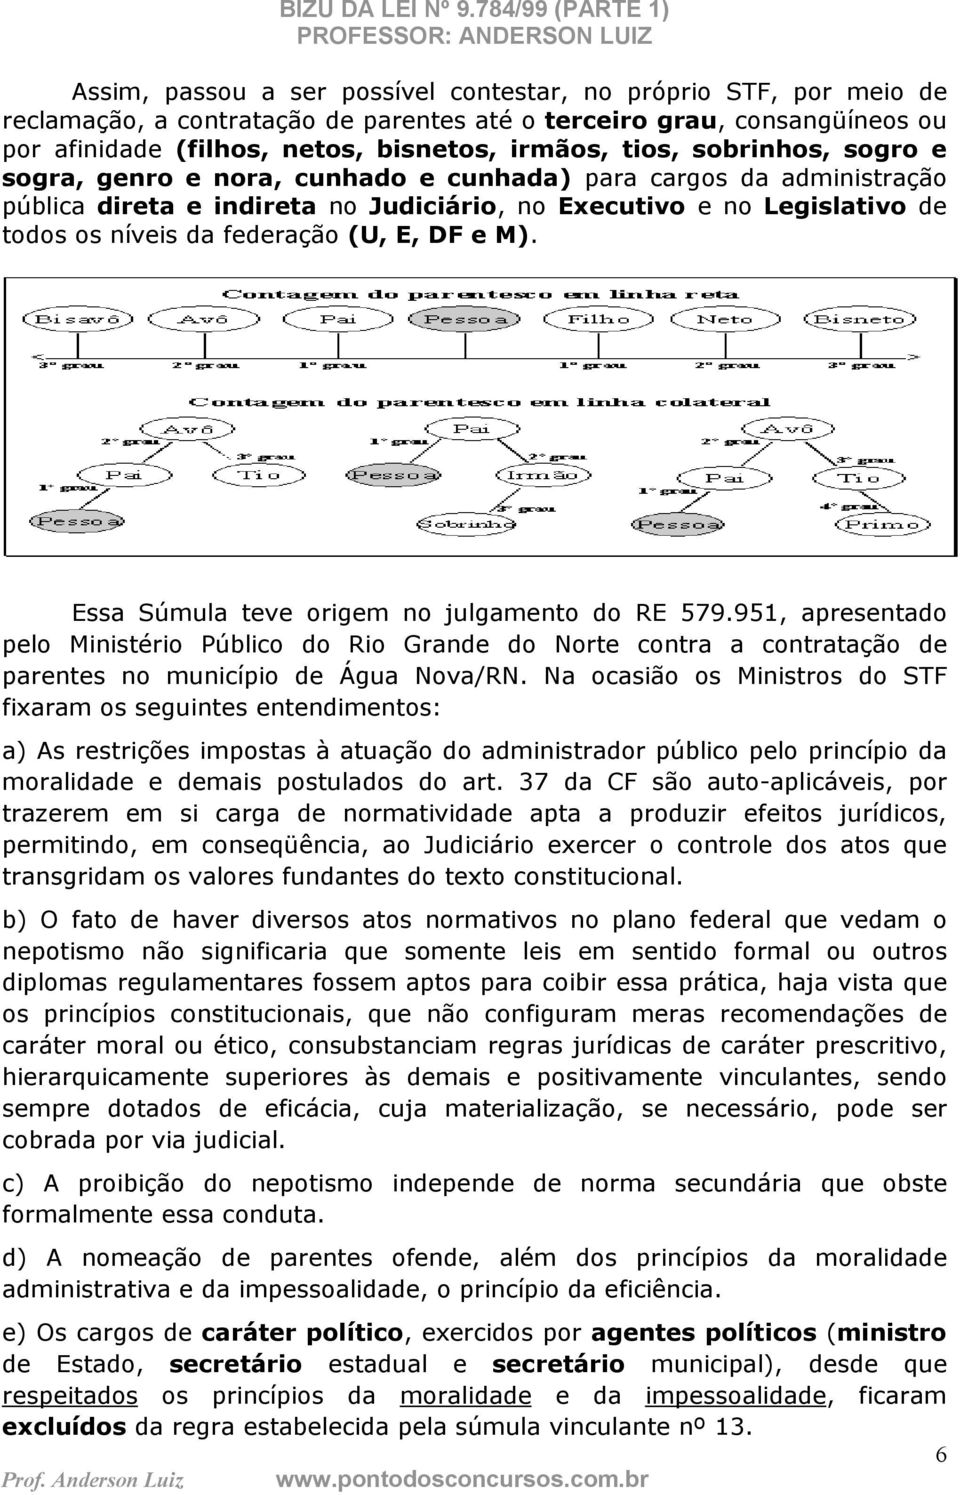 DF e M). Essa Súmula teve origem no julgamento do RE 579.951, apresentado pelo Ministério Público do Rio Grande do Norte contra a contratação de parentes no município de Água Nova/RN.